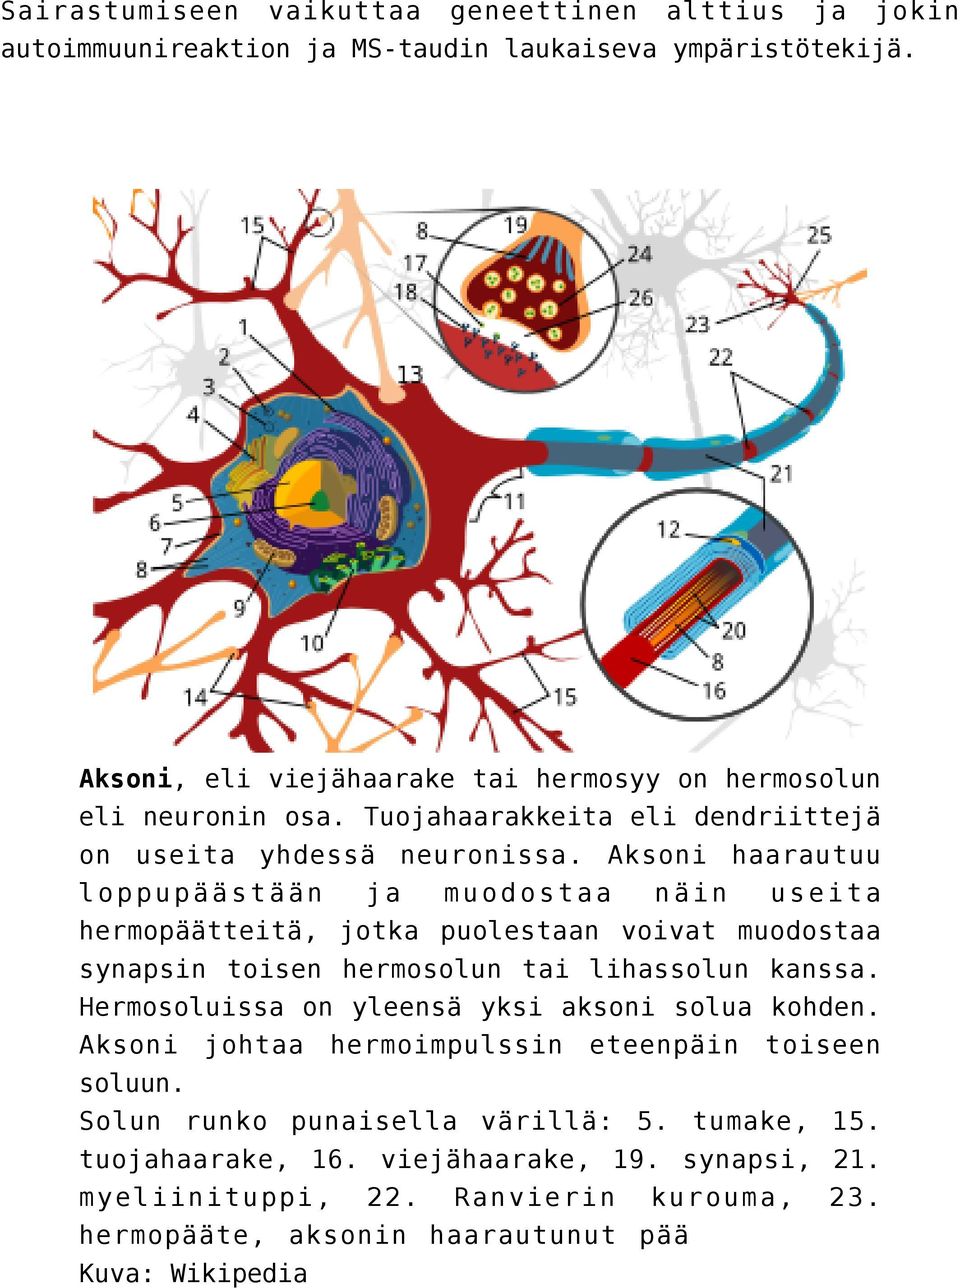 Aksoni haarautuu loppupäästään ja muodostaa näin useita hermopäätteitä, jotka puolestaan voivat muodostaa synapsin toisen hermosolun tai lihassolun kanssa.